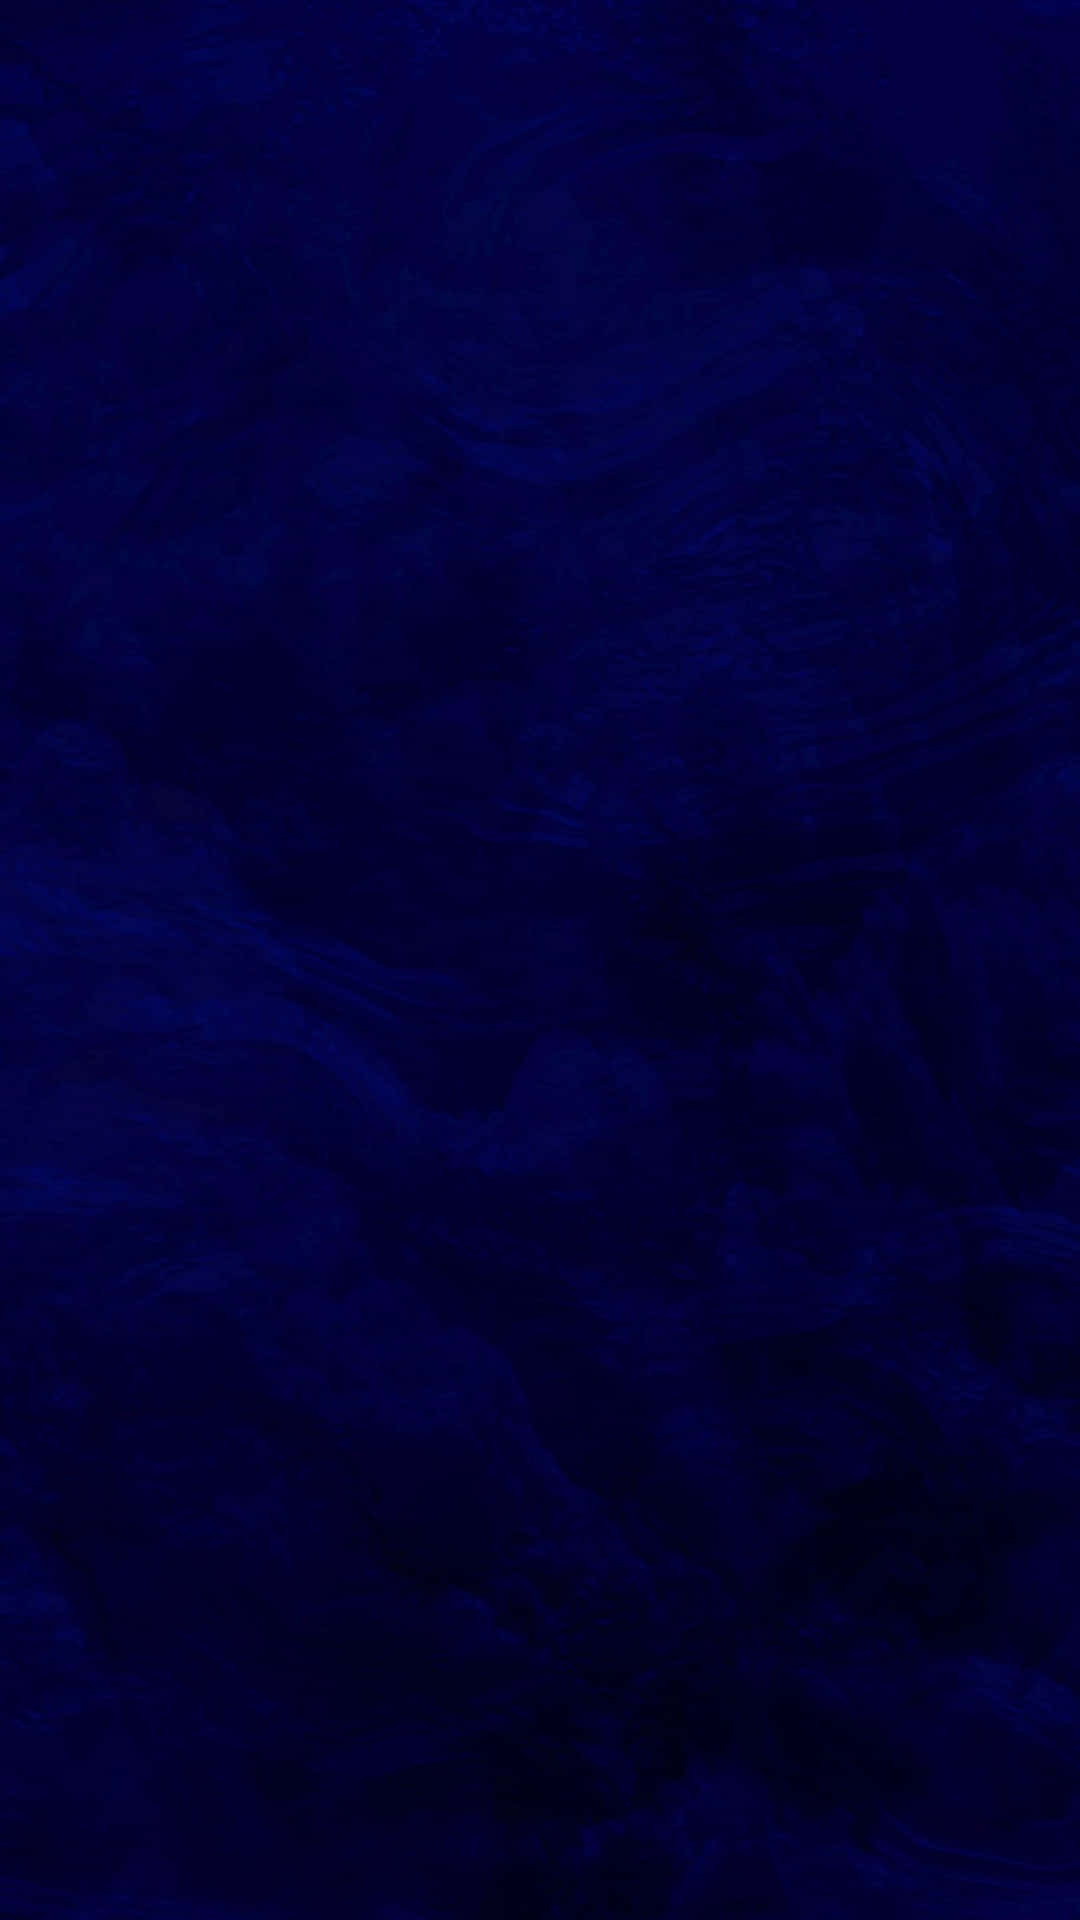 Salpicaduradegradado Oscuro Azul Fondo de pantalla